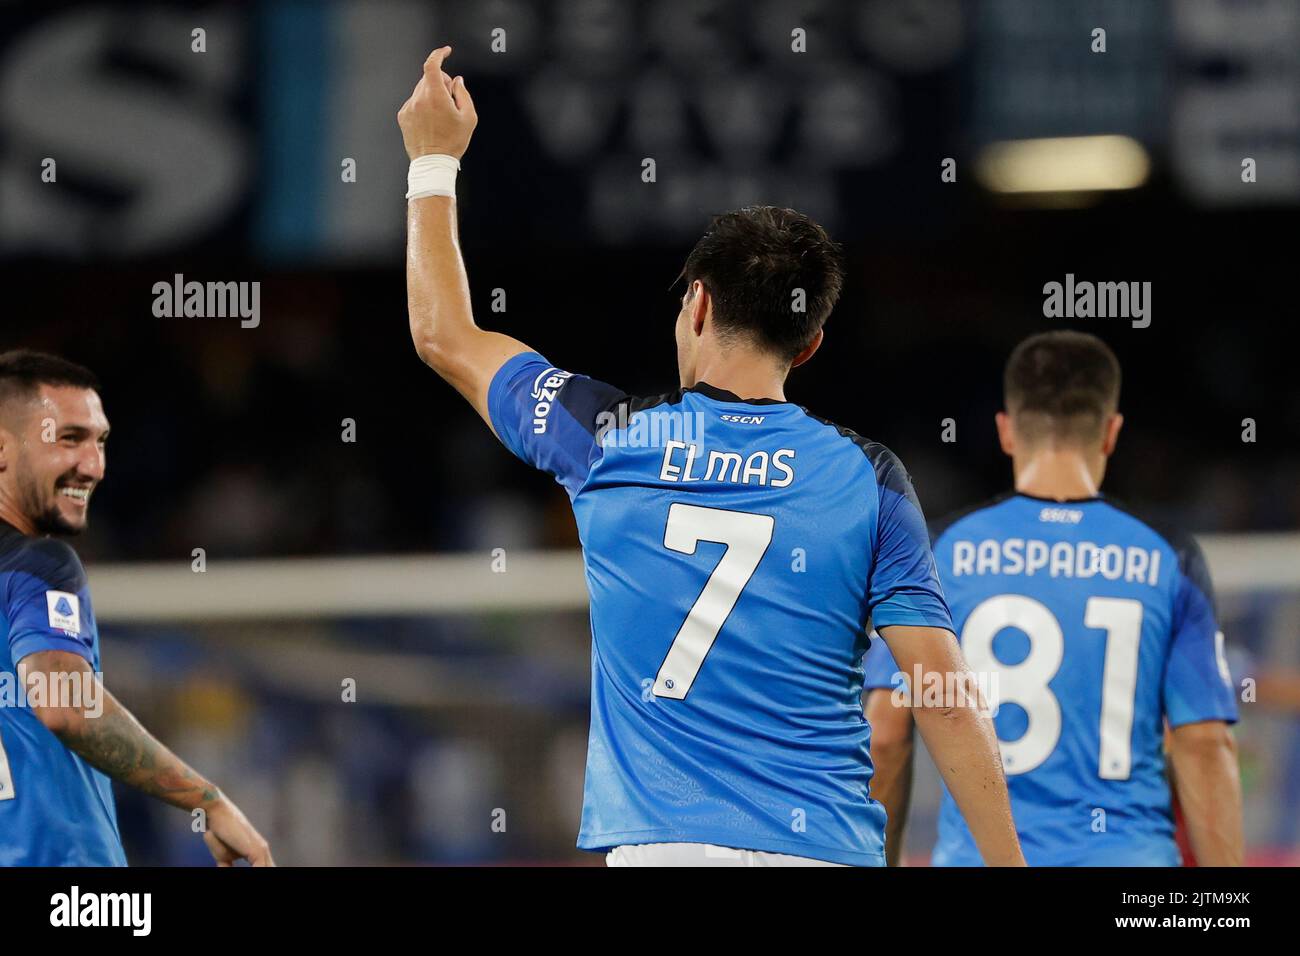 Eljif Elmas de Nápoles celebra después de los resultados durante el partido  de fútbol italiano Serie A SSC Napoli vs US Lecce el 31 de agosto de 2022  en el estadio Diego